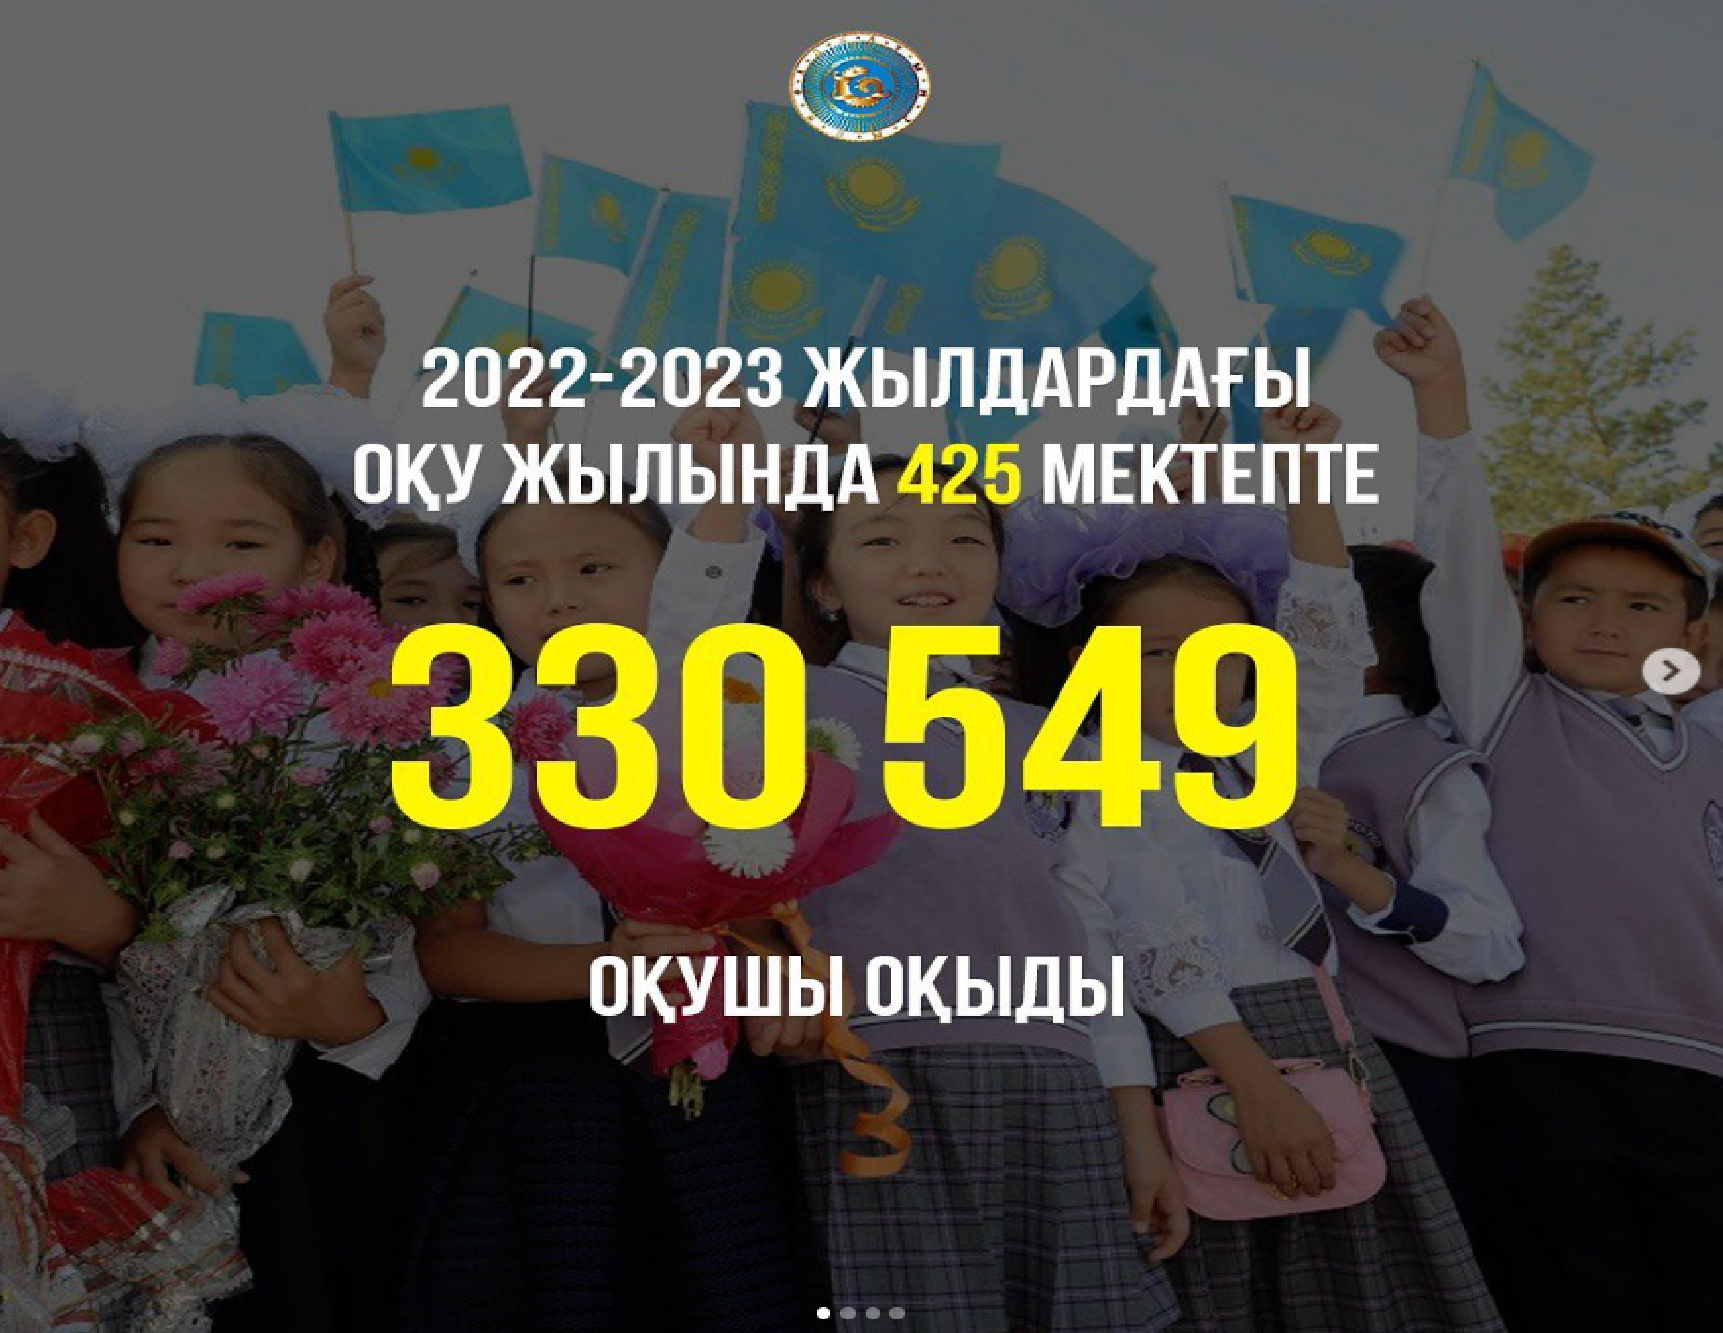 2022-2023 жылдардағы оқу жылында 425 мектепте 330549 оқушы оқыды